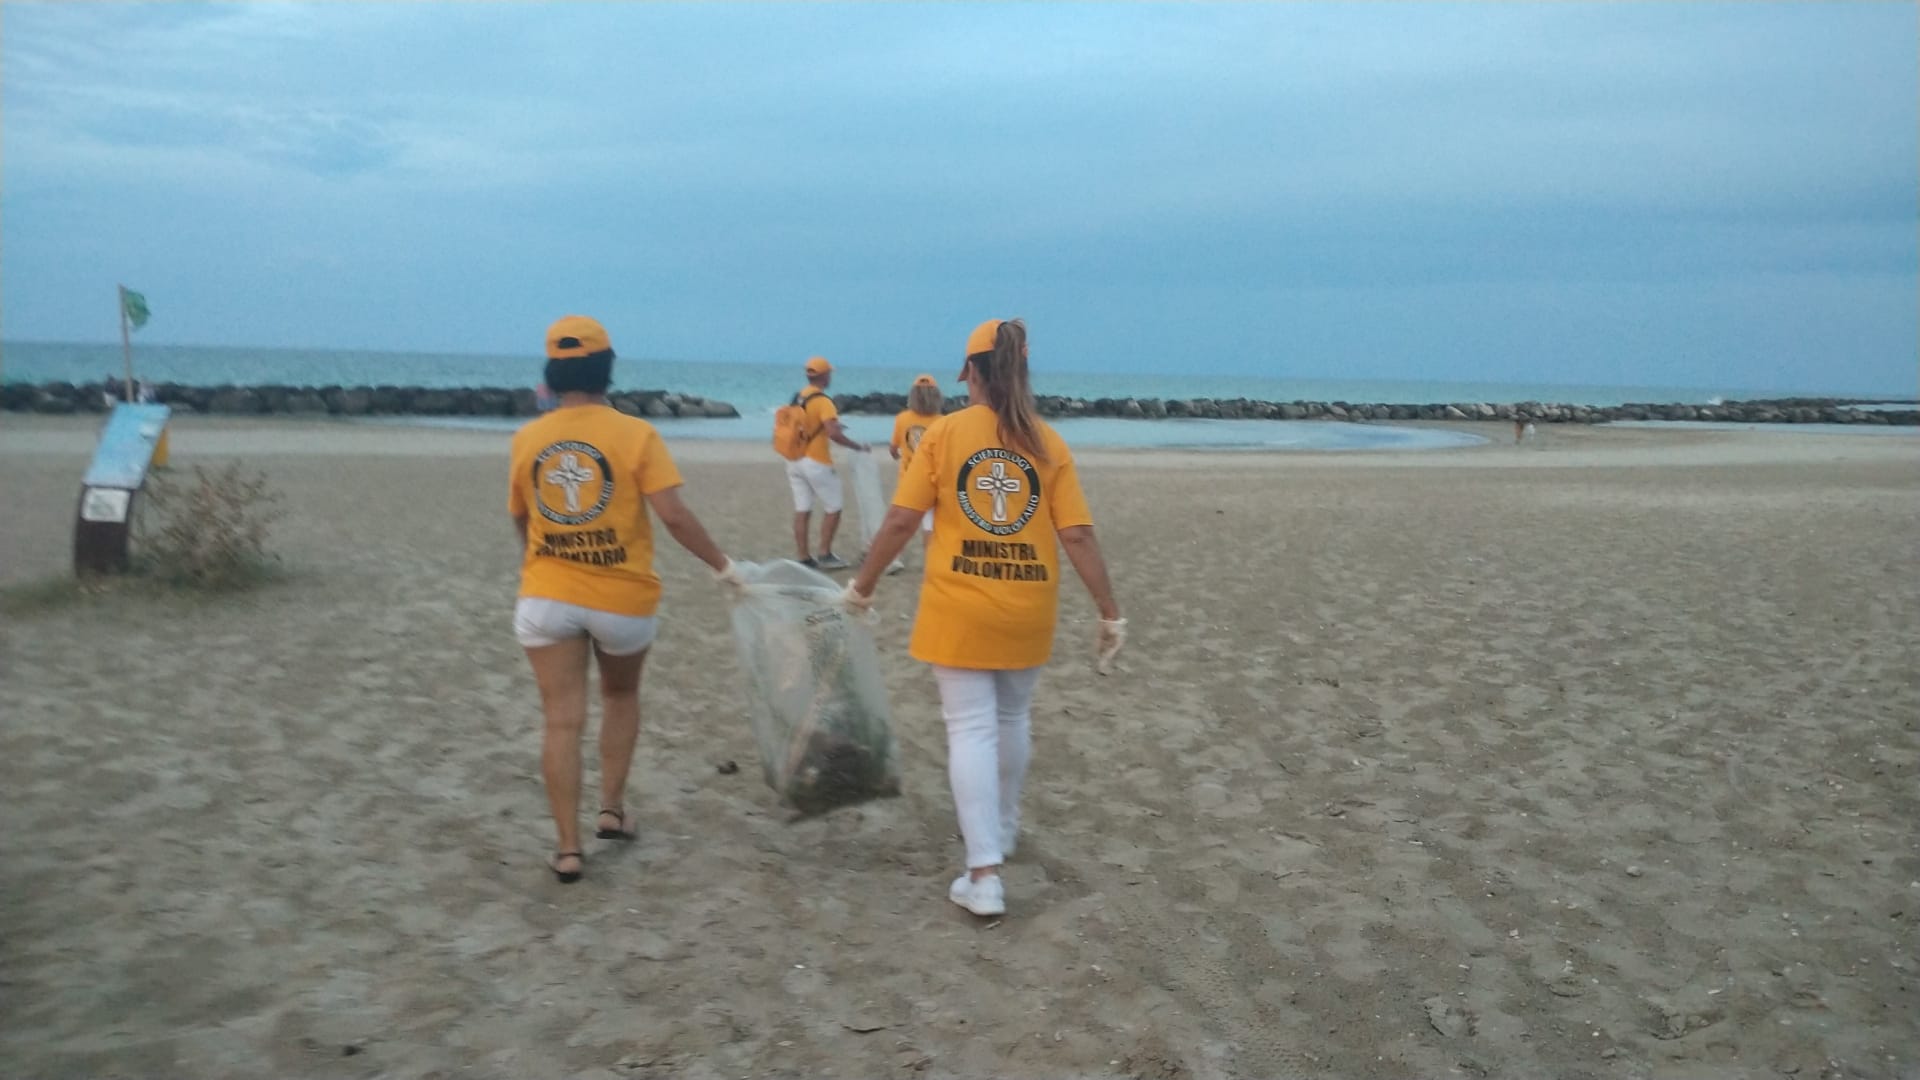 A CESANO volontari all’opera: raccolti due bei sacchi tra plastica e spazzatura nell’arenile e sul lungomare!